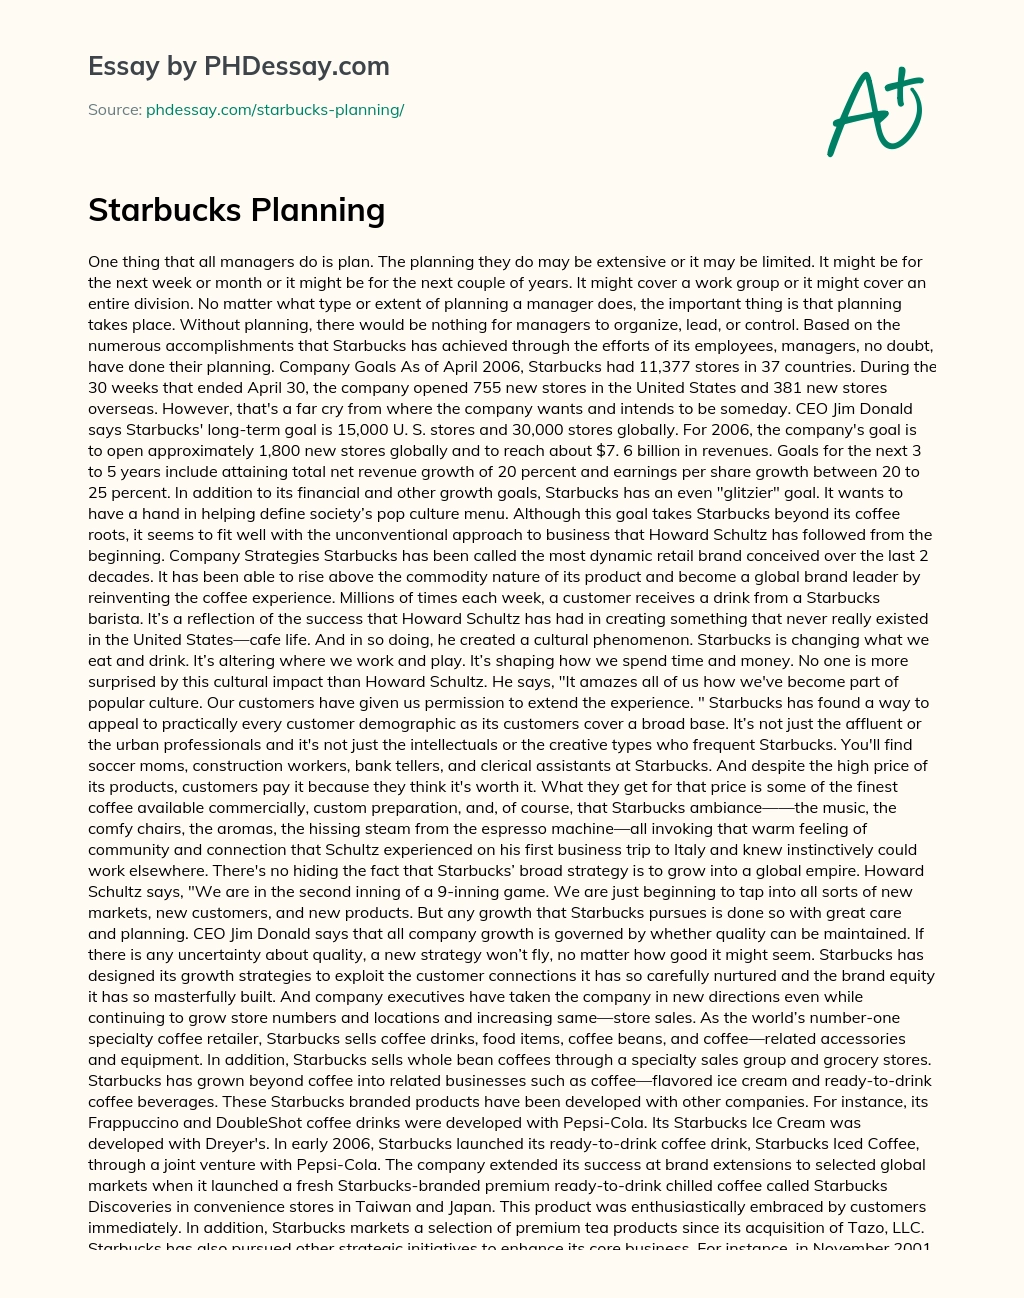 Starbucks Planning essay